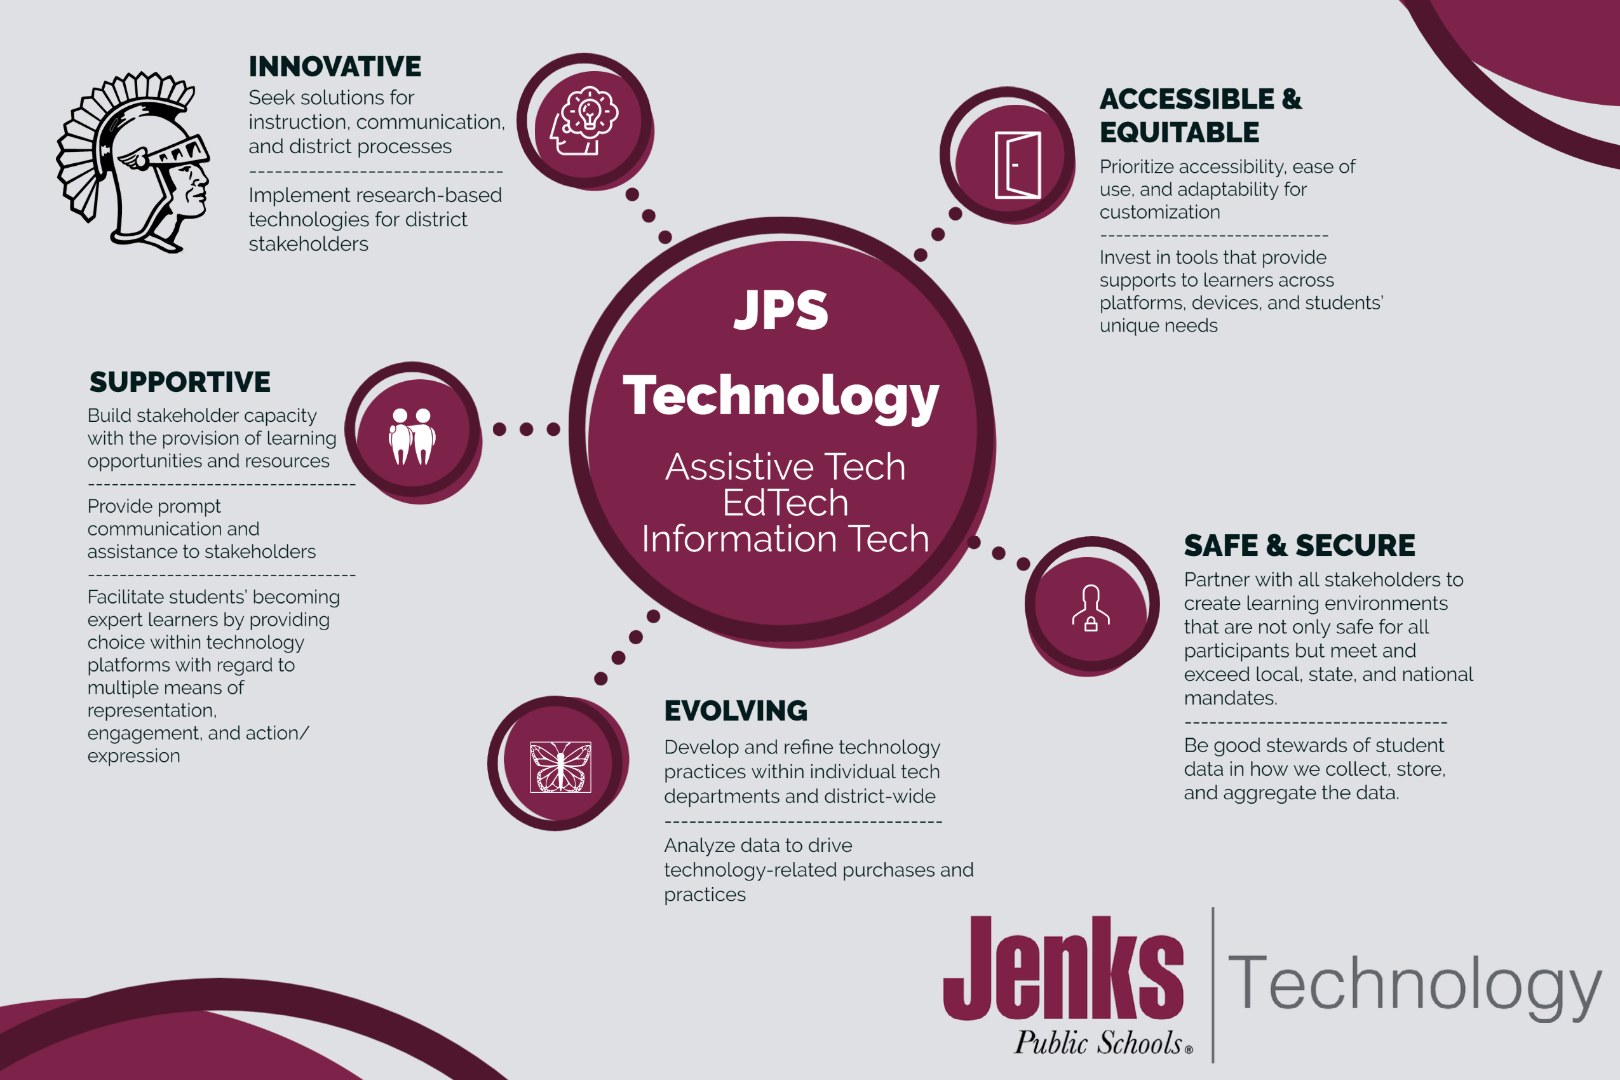 jps technology assistive tech edtech information tech